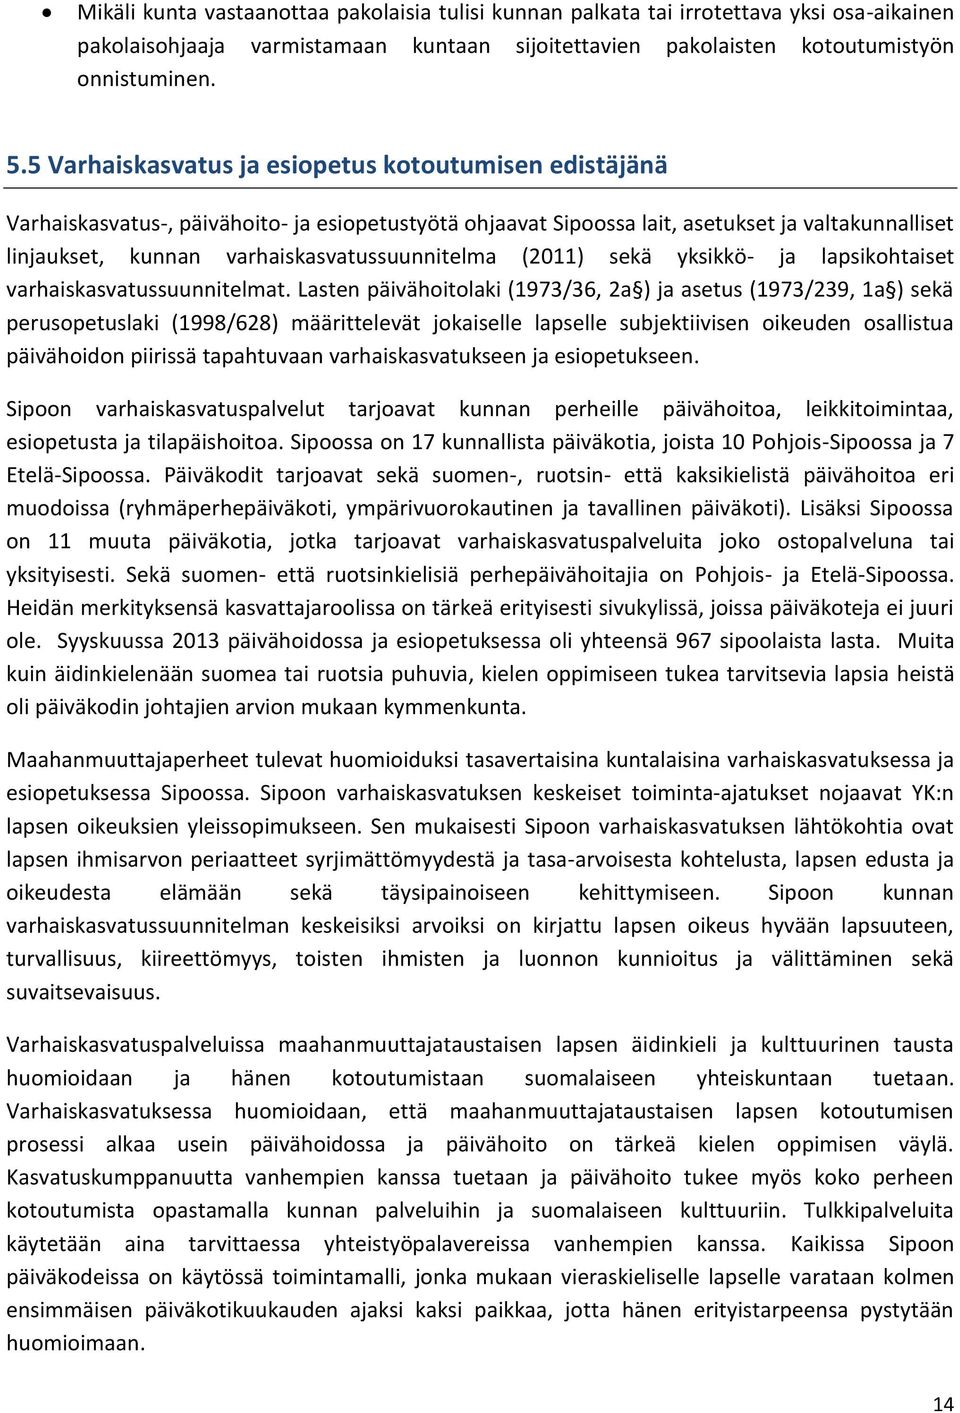 varhaiskasvatussuunnitelma (2011) sekä yksikkö- ja lapsikohtaiset varhaiskasvatussuunnitelmat.